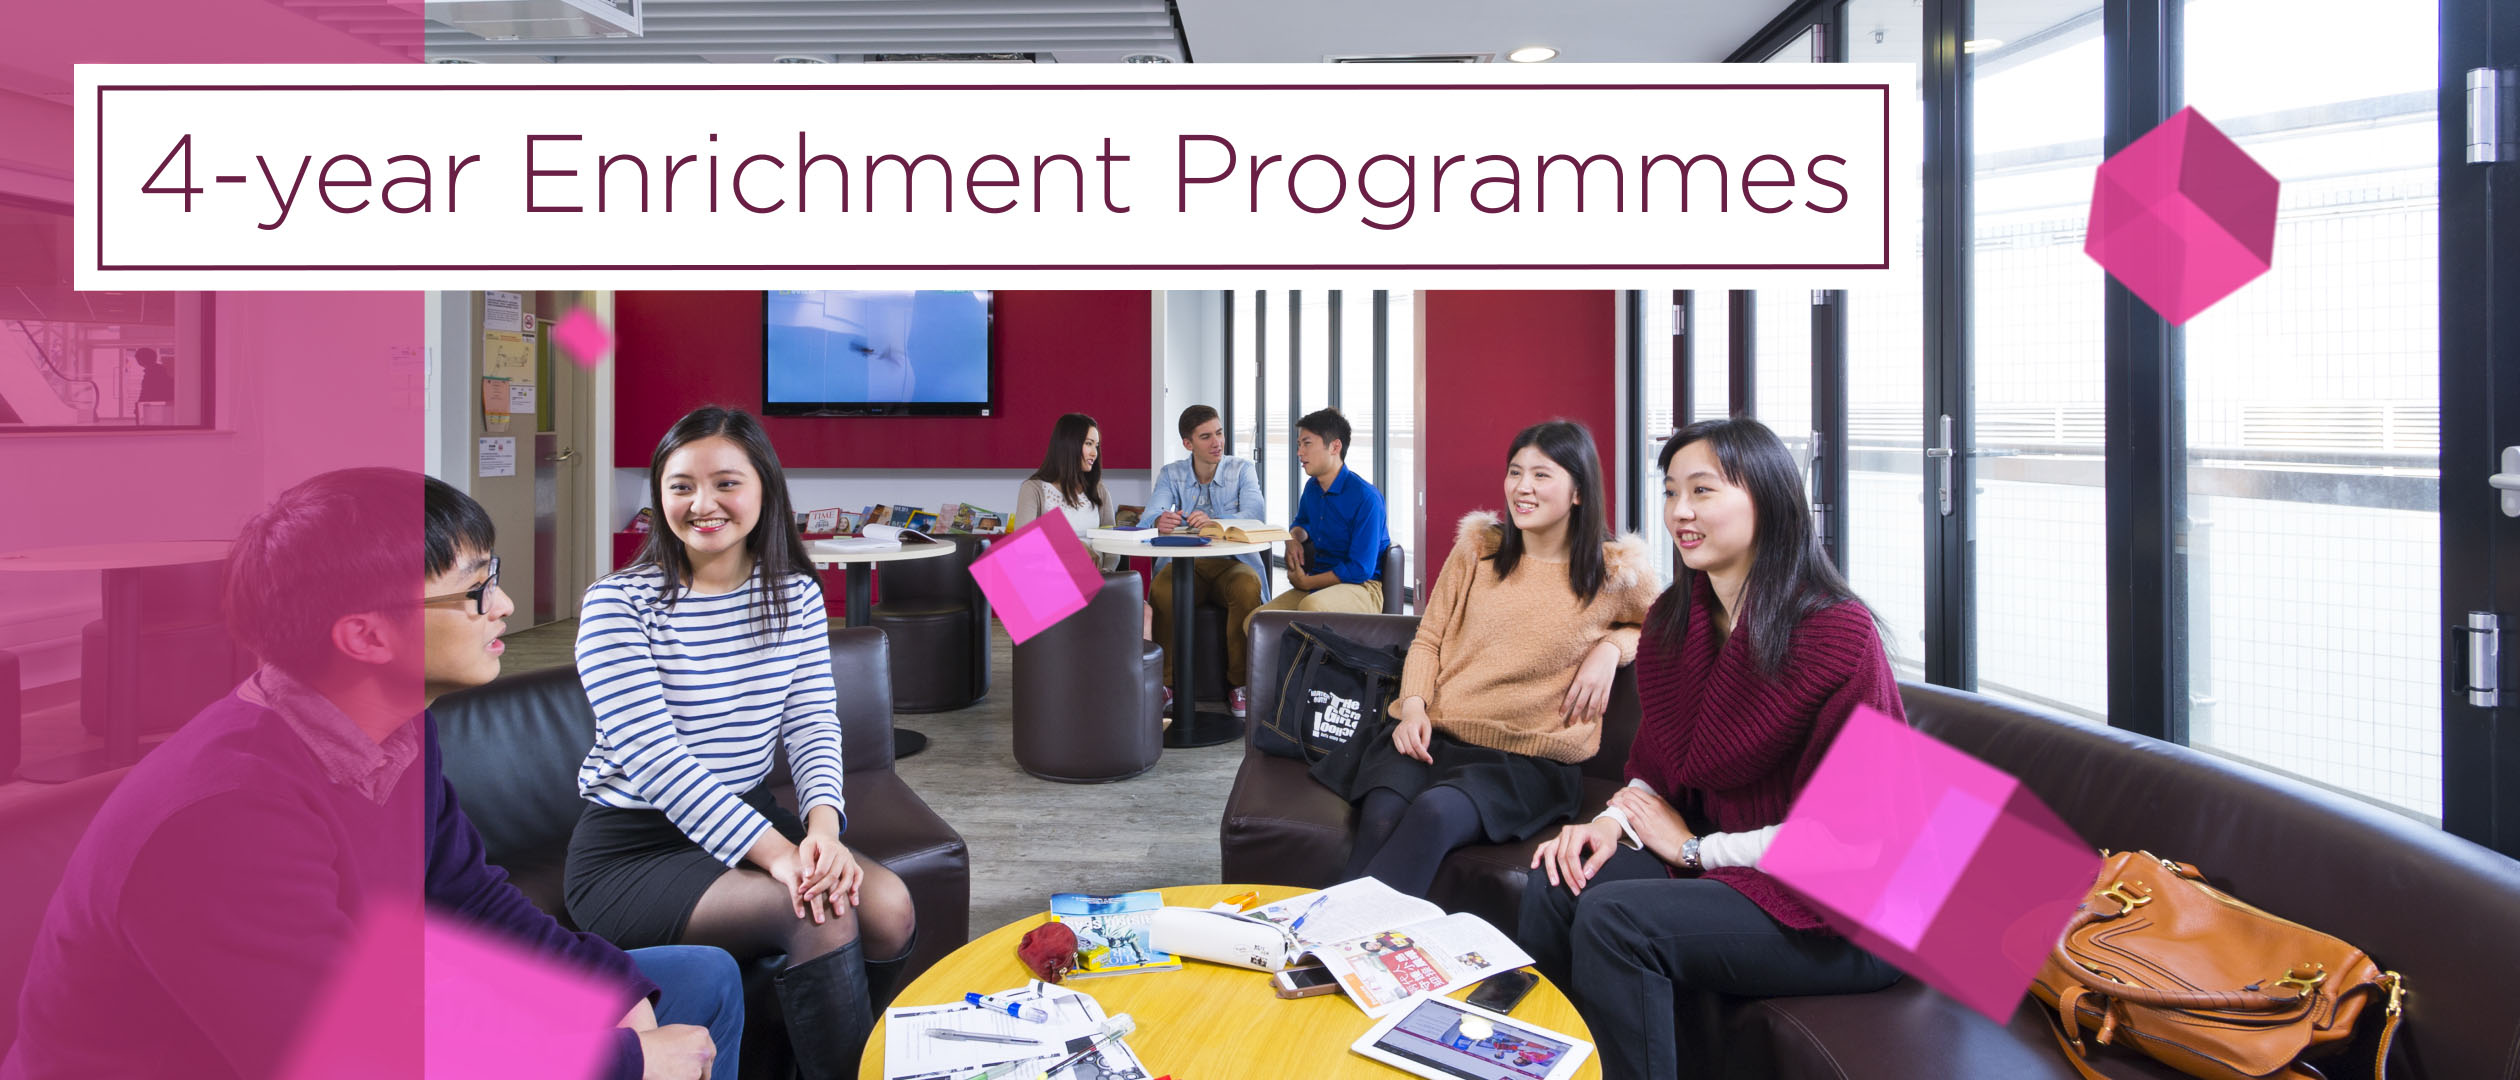 4-year Enrichment Programme